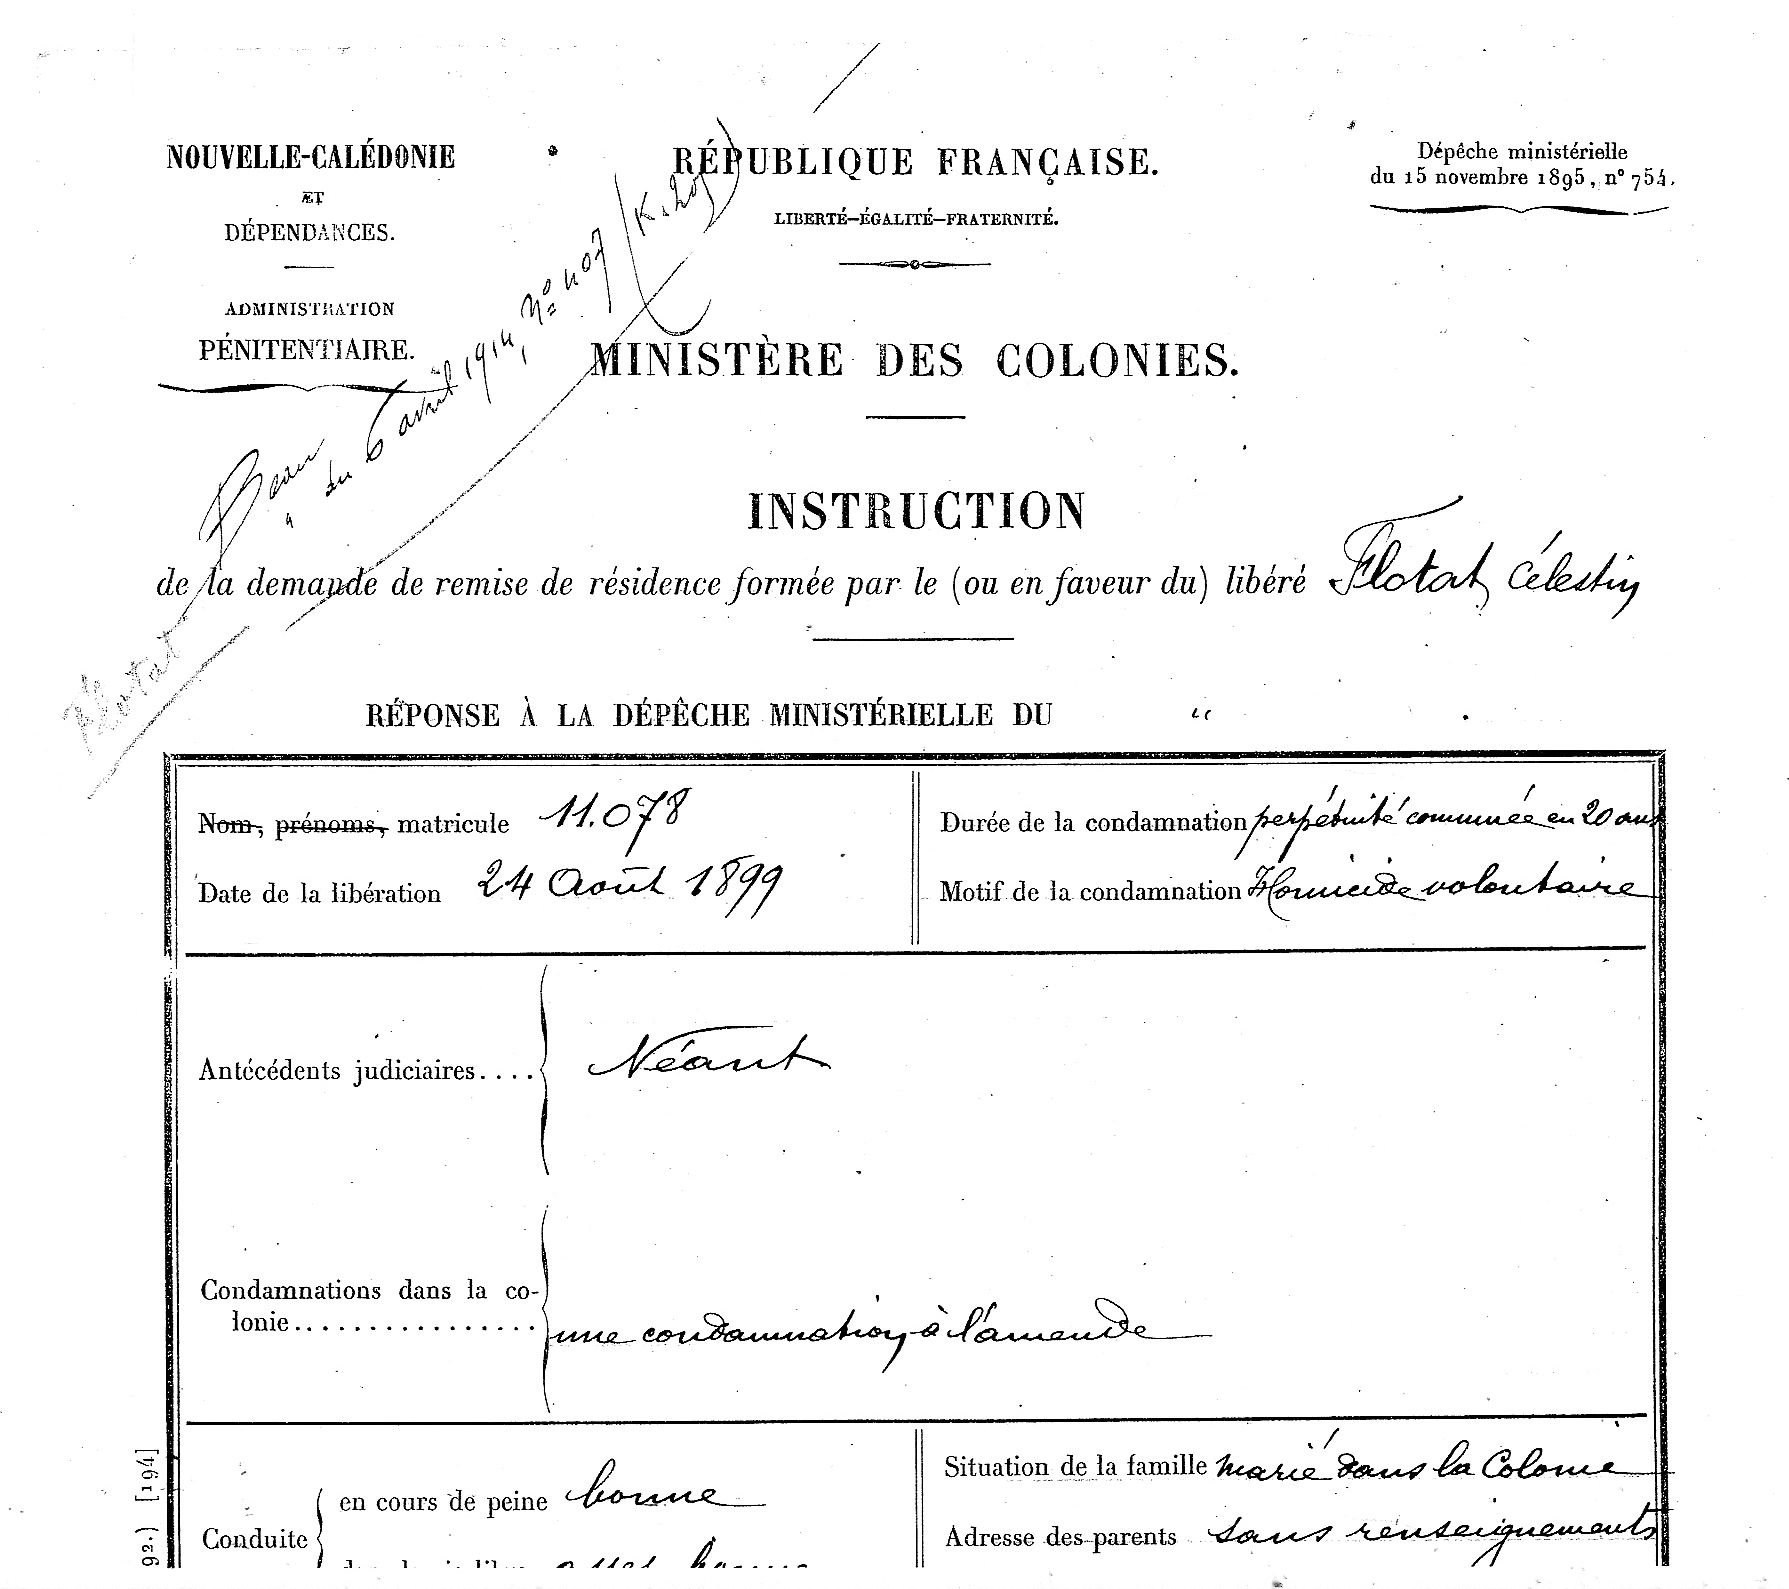 24 août 1899, Célestin Flotat est libéré mais toujours astreint à résidence.